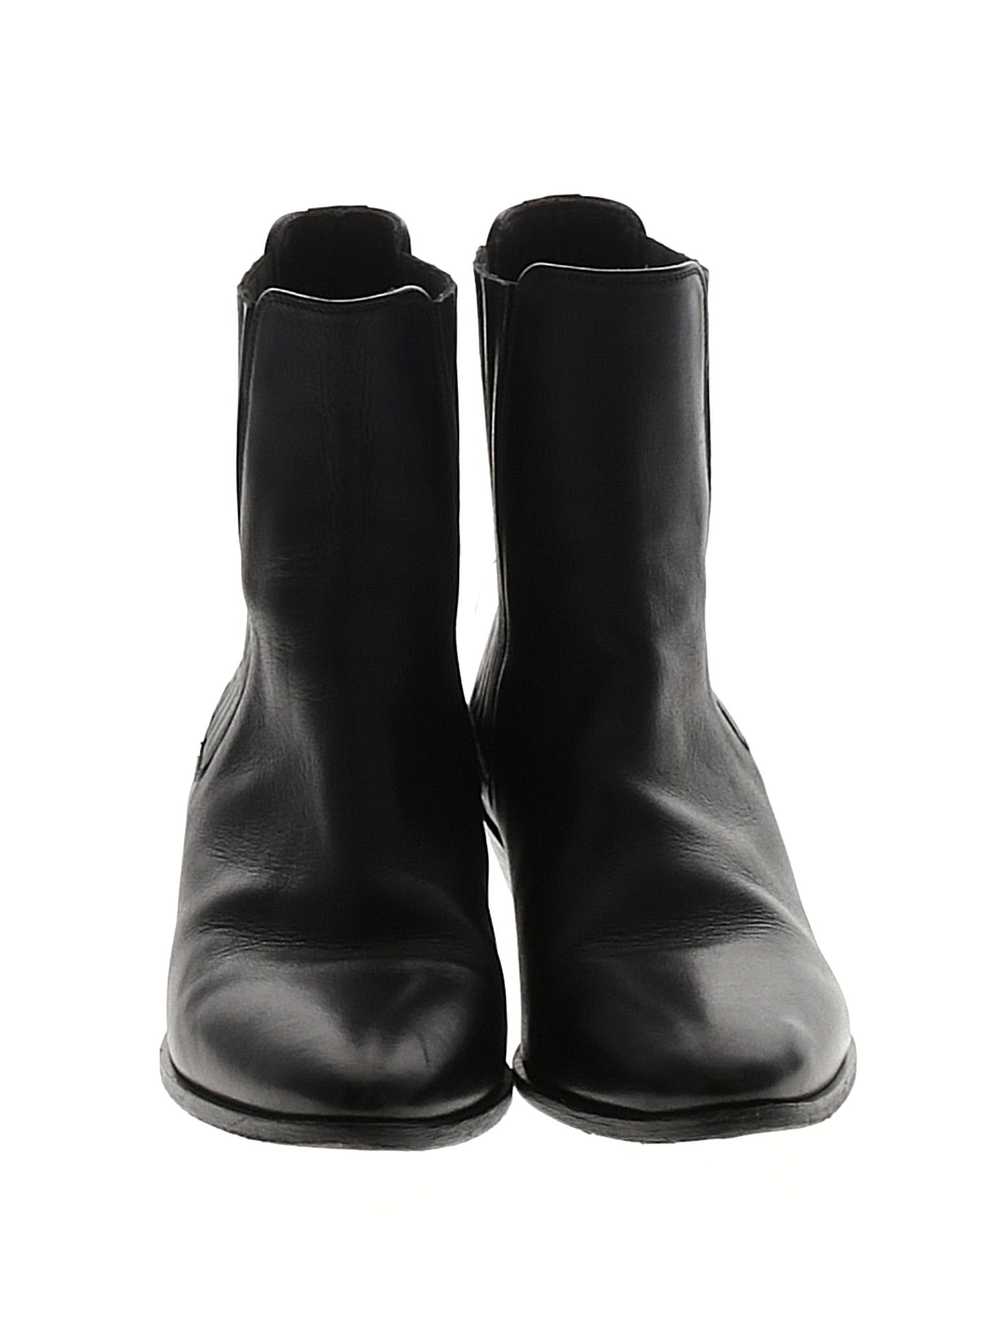 Saint Laurent Women Black Ankle Boots 37.5 eur - image 2